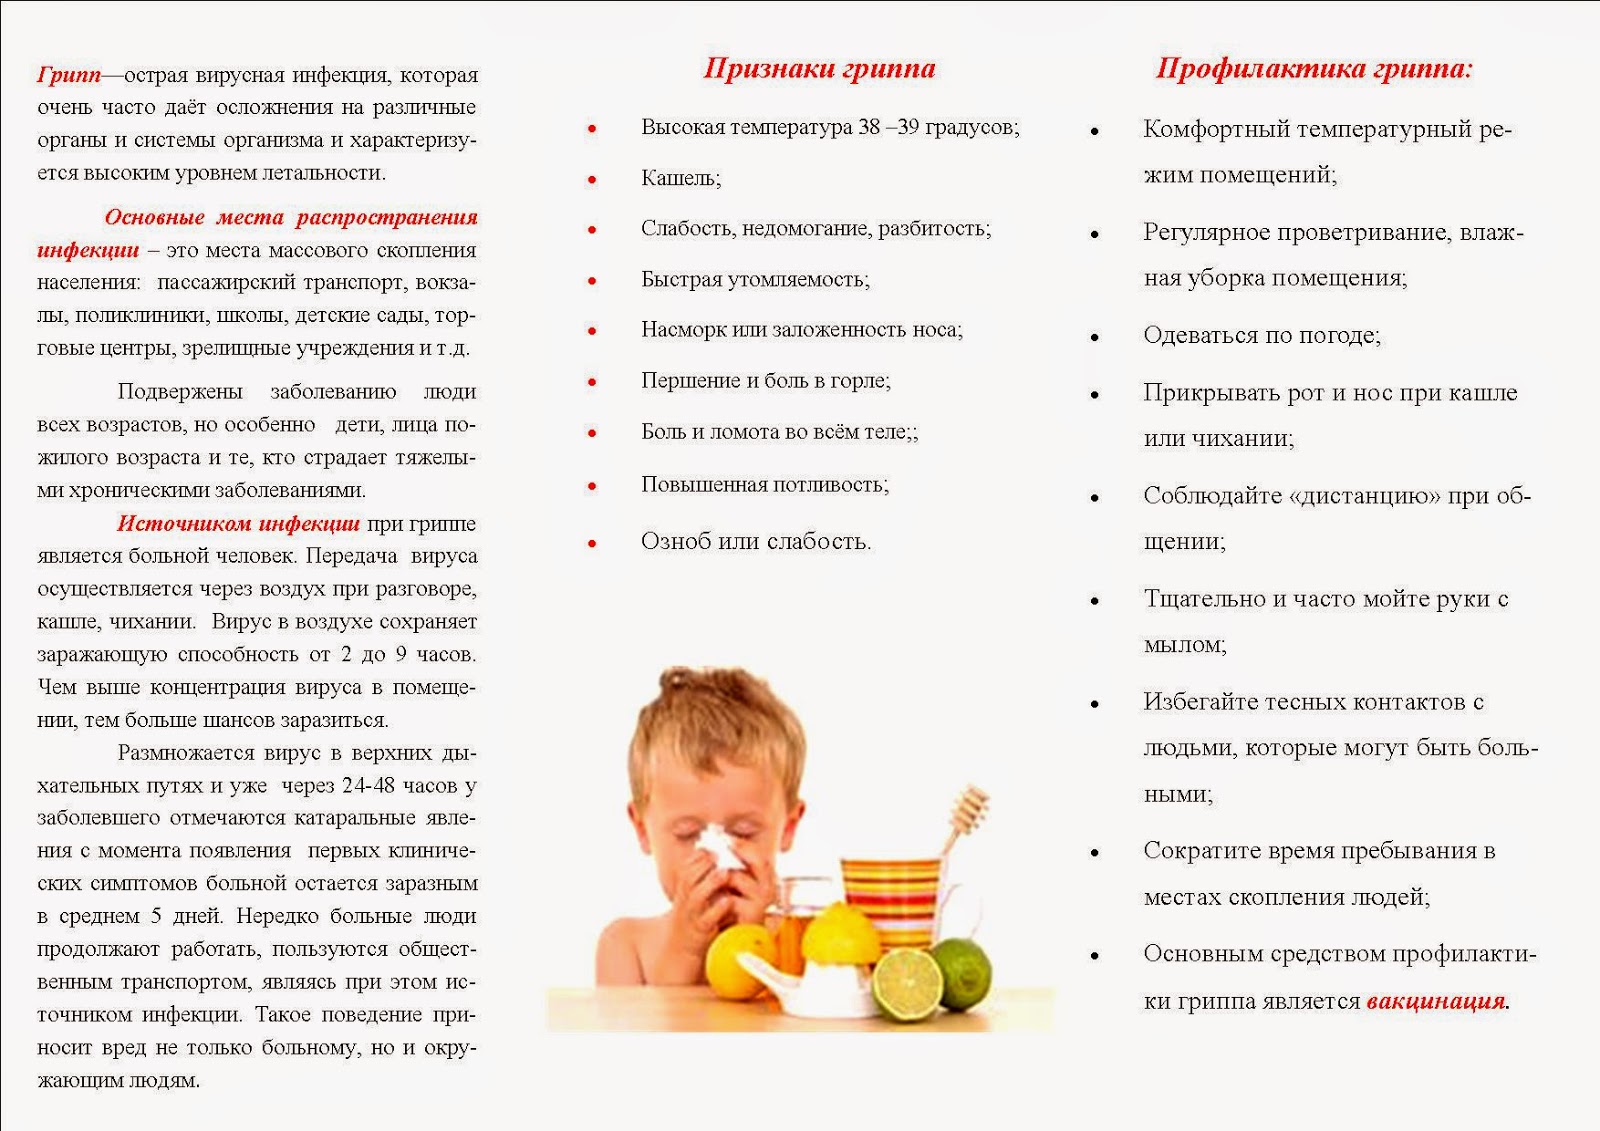 Как лечить простуду у детей эффективно и безопасно: Советы доктора Комаровского